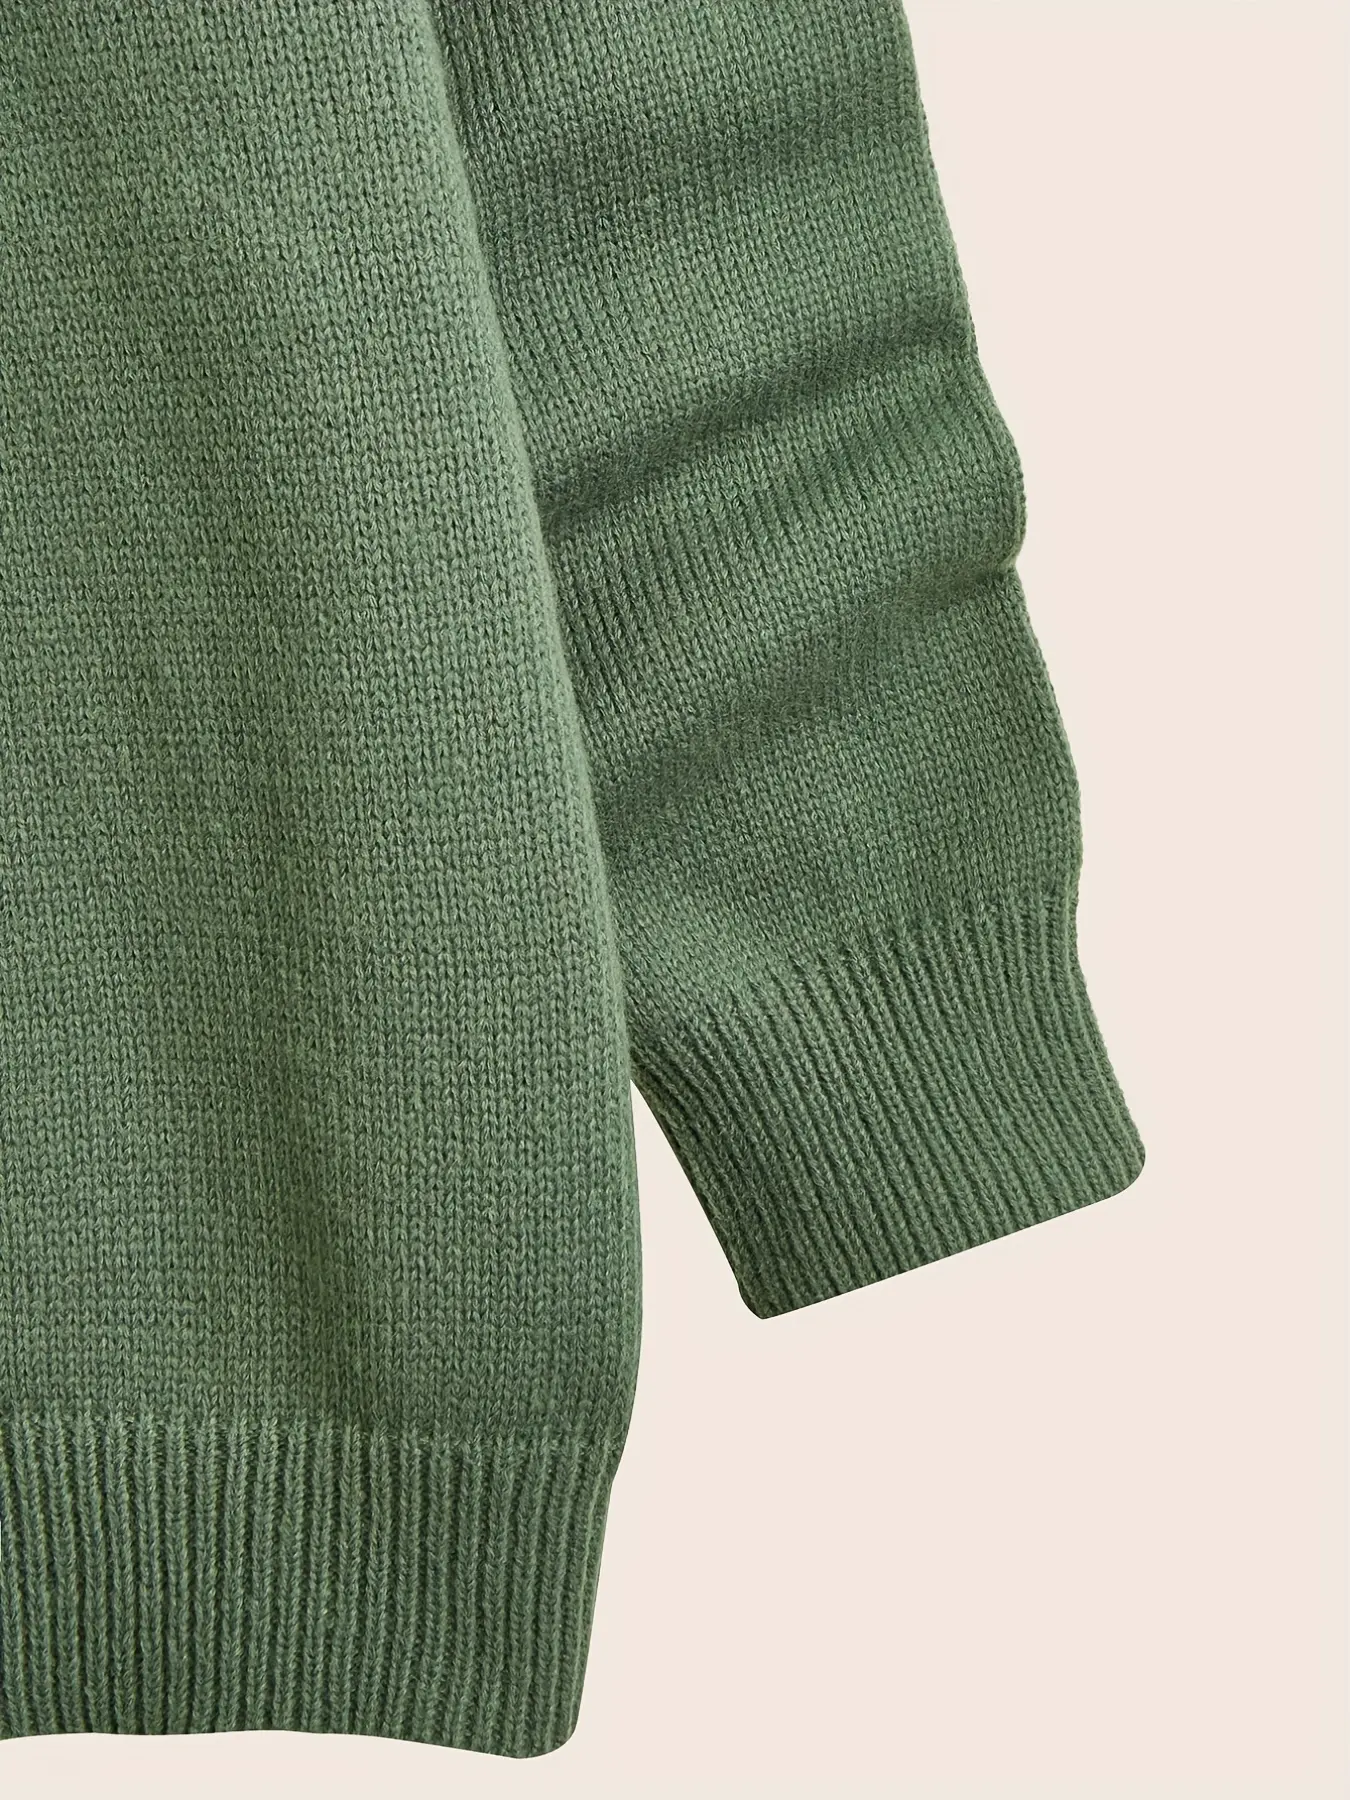 Sweater rajutan Logo kustom Sweater Jacquard pria Pullover rajut lengan panjang leher bulat katun